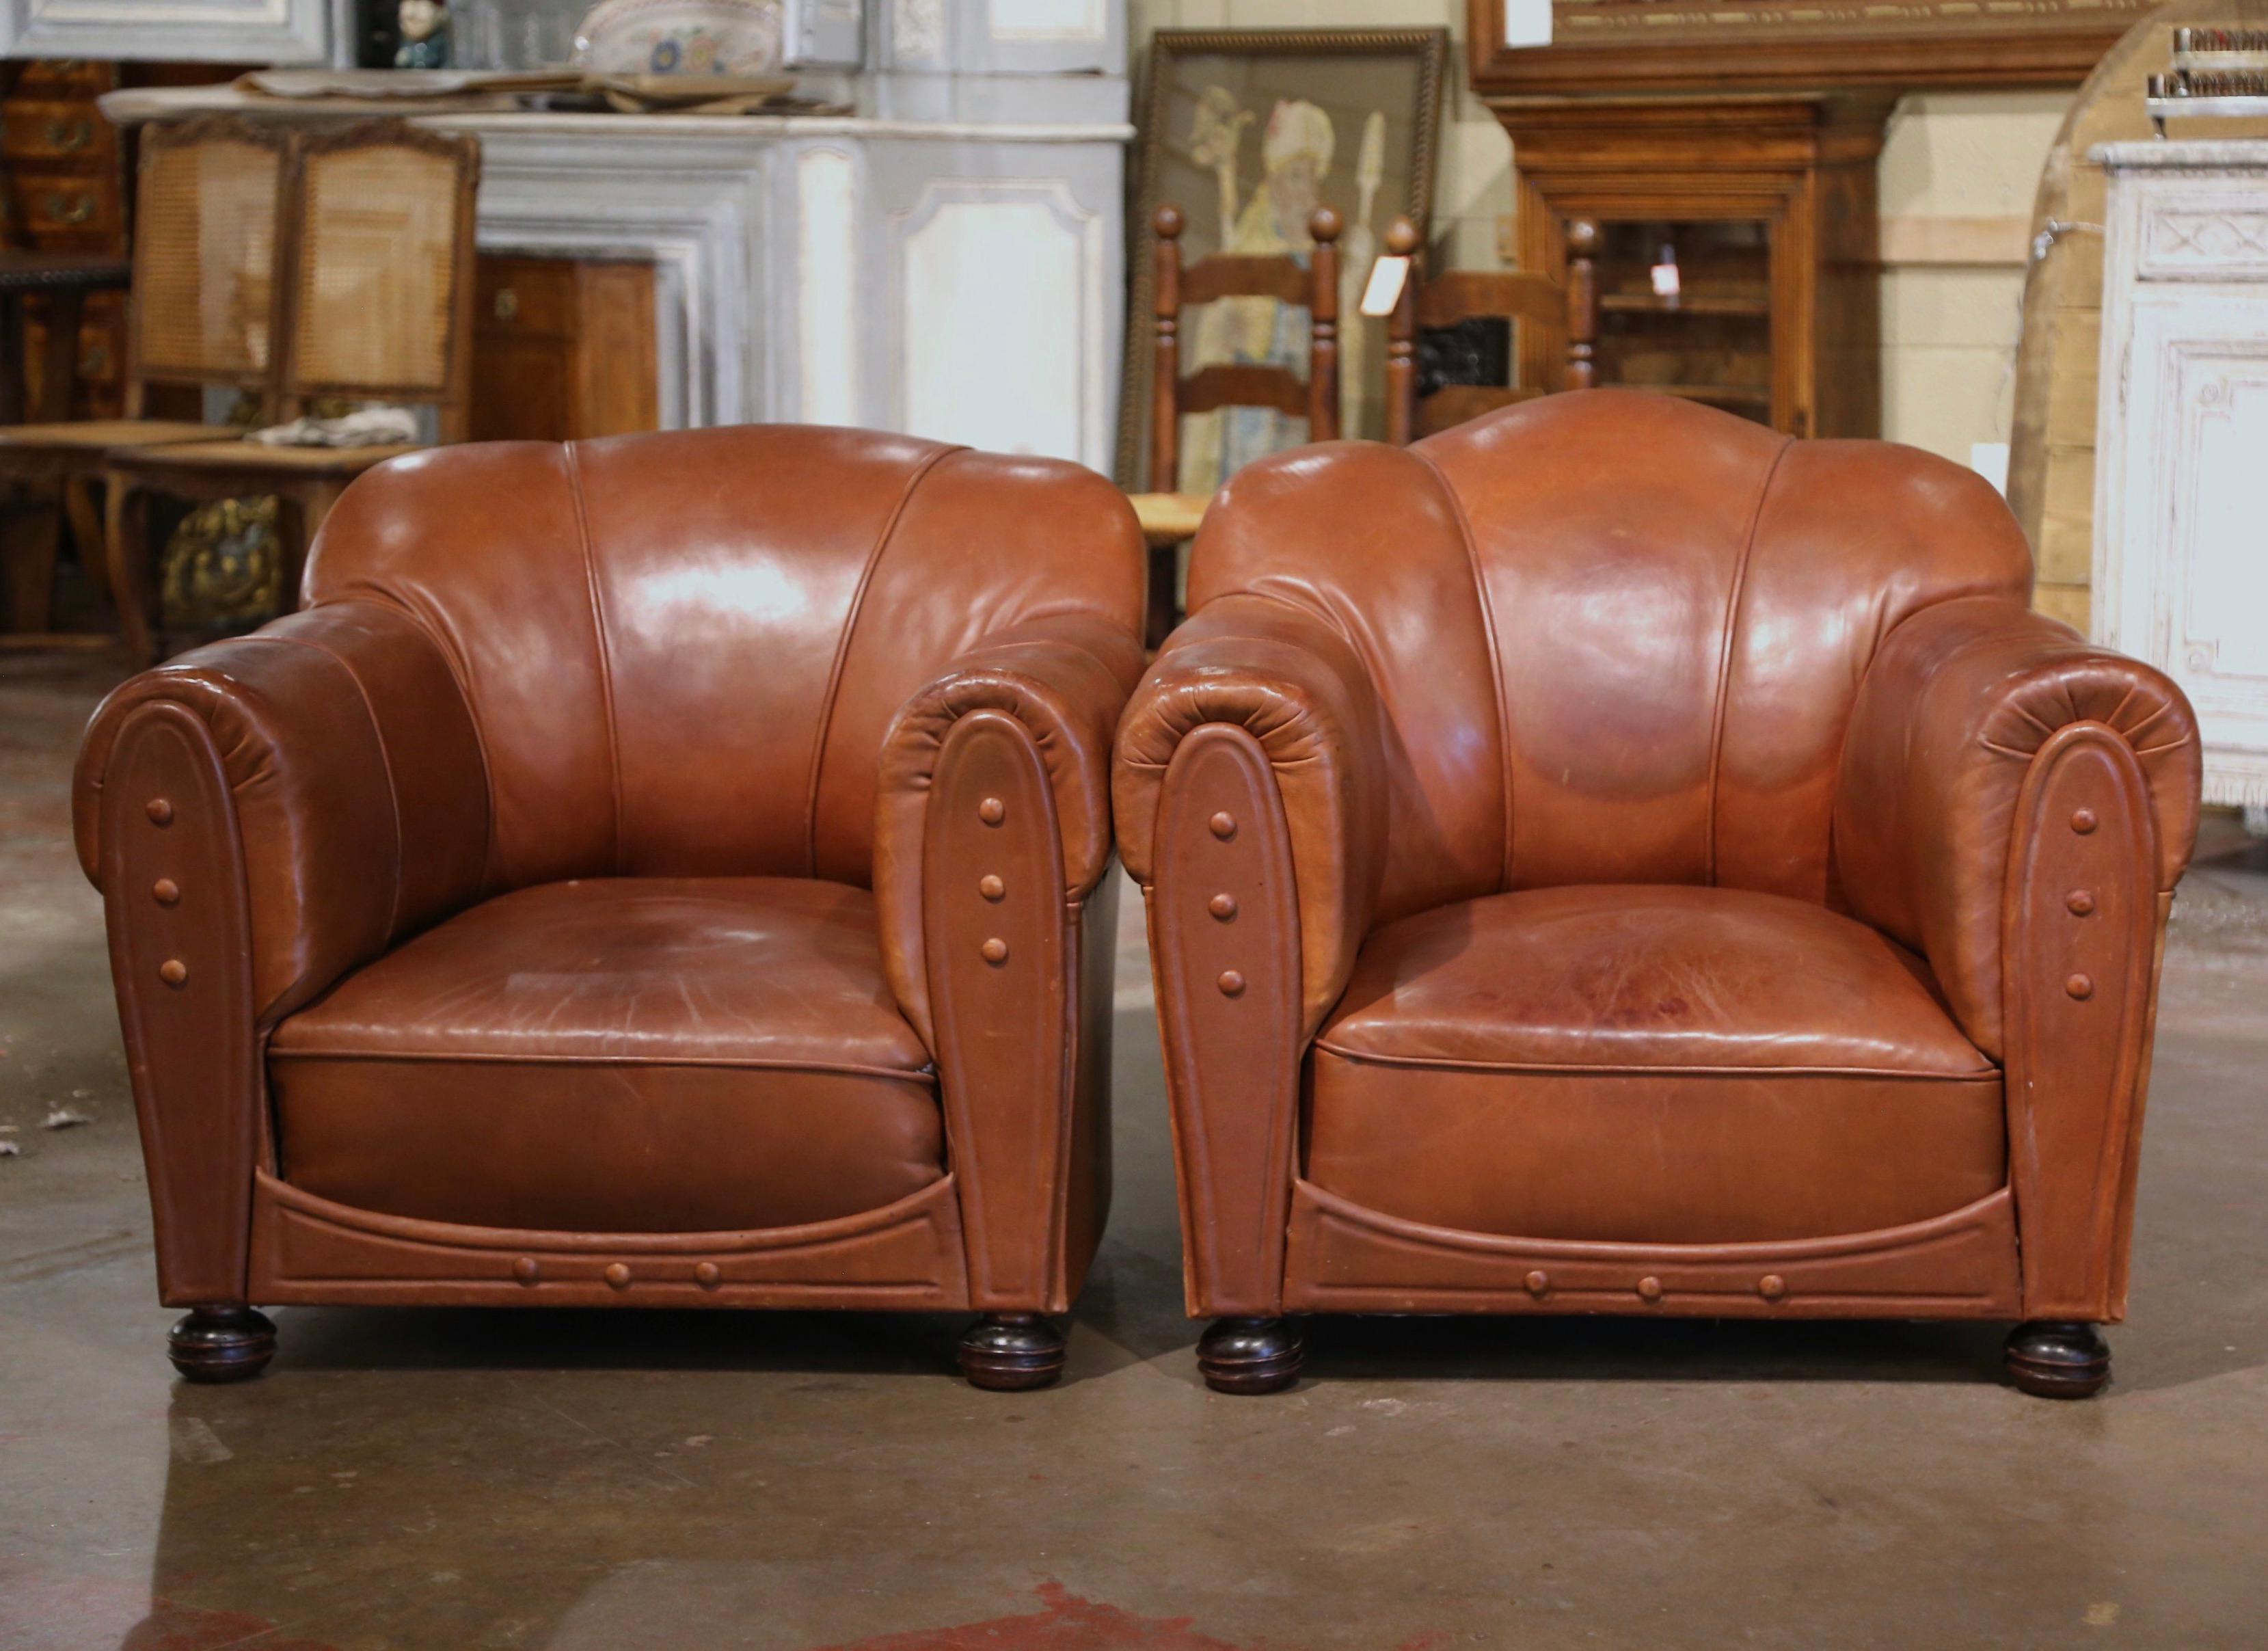 Ces confortables fauteuils club anciens de style Art déco ont été fabriqués en France, vers 1930. Ces chaises imposantes et masculines sont dotées d'accoudoirs larges et arrondis, d'un dossier arqué et festonné, de pieds en bois ronds à l'avant et